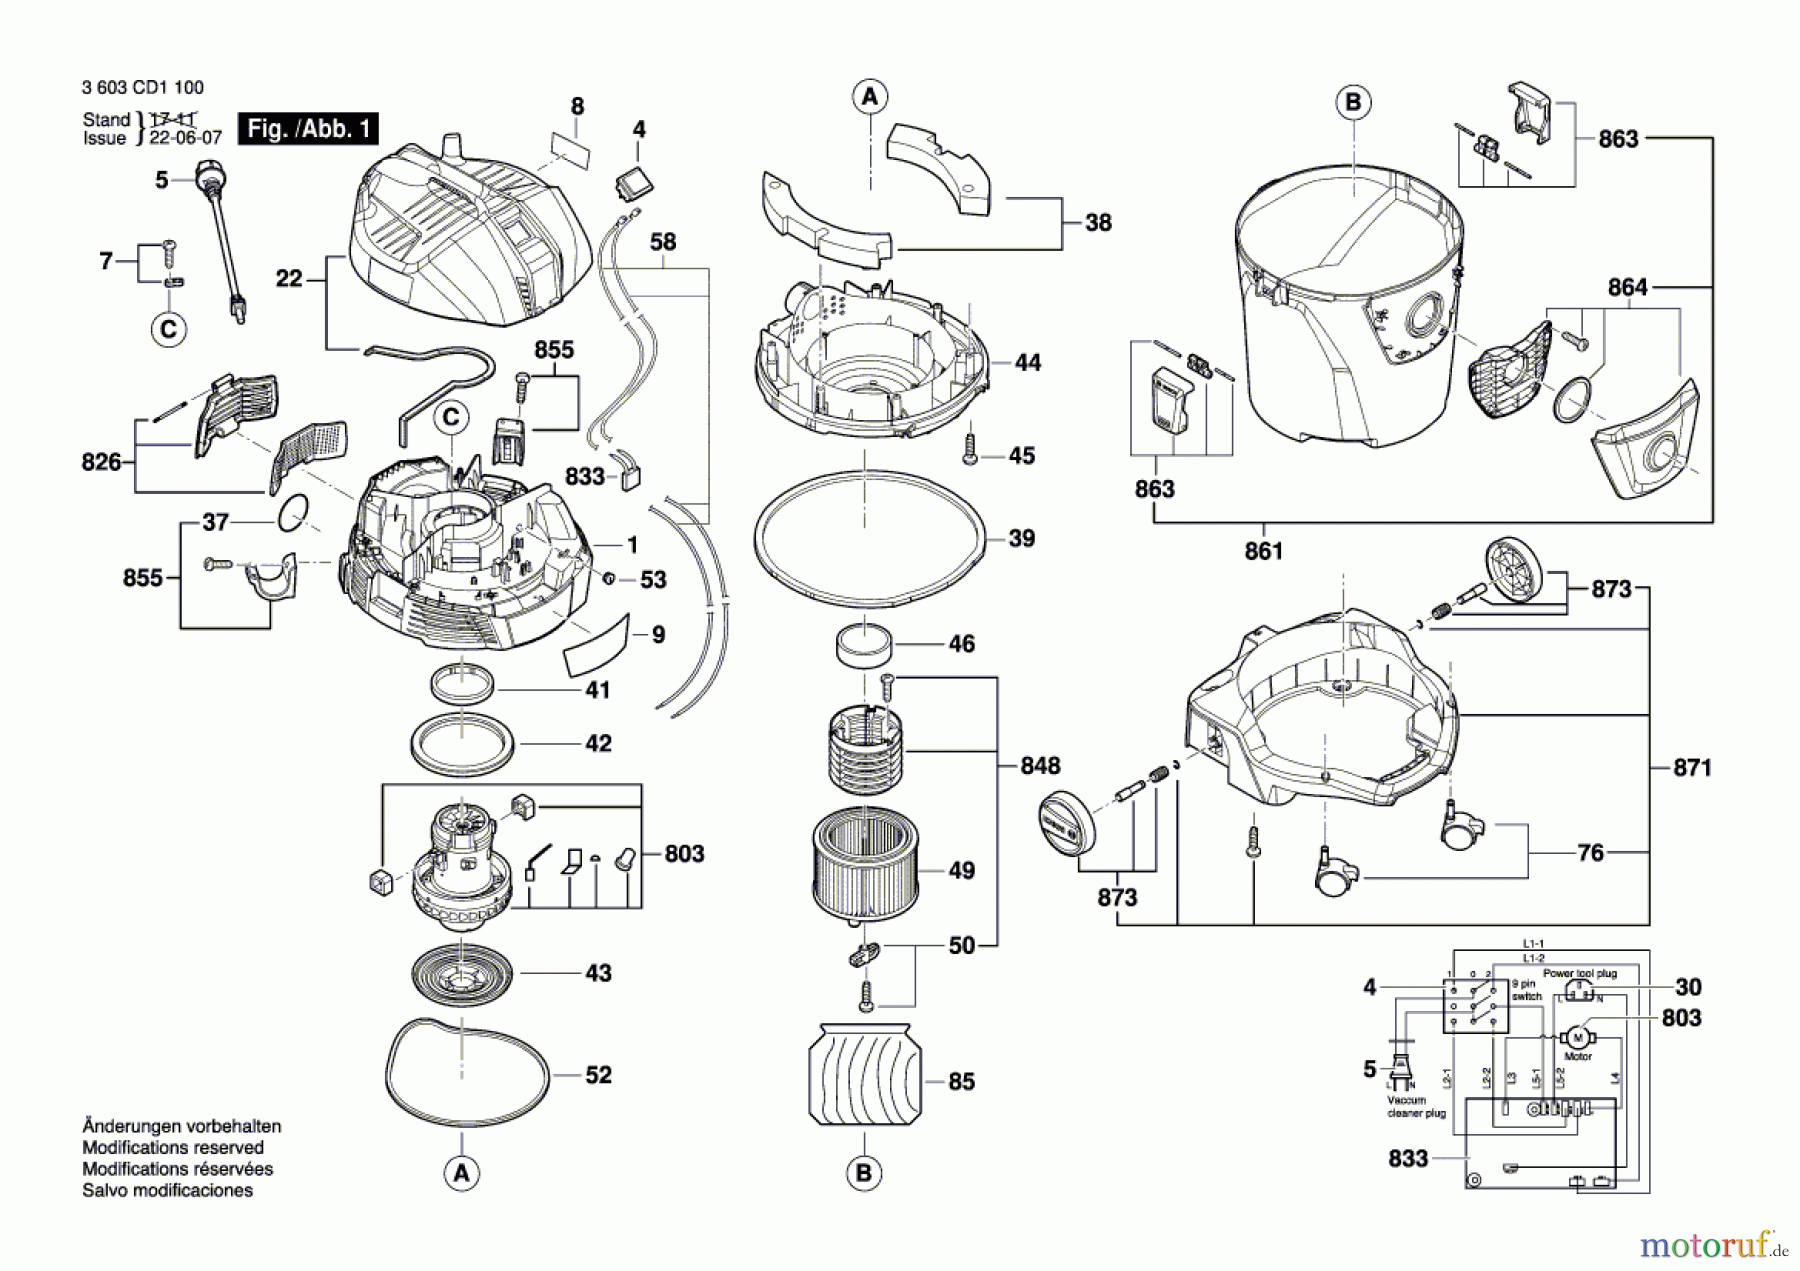  Bosch Werkzeug Allzwecksauger UniversalVac 15 Seite 1